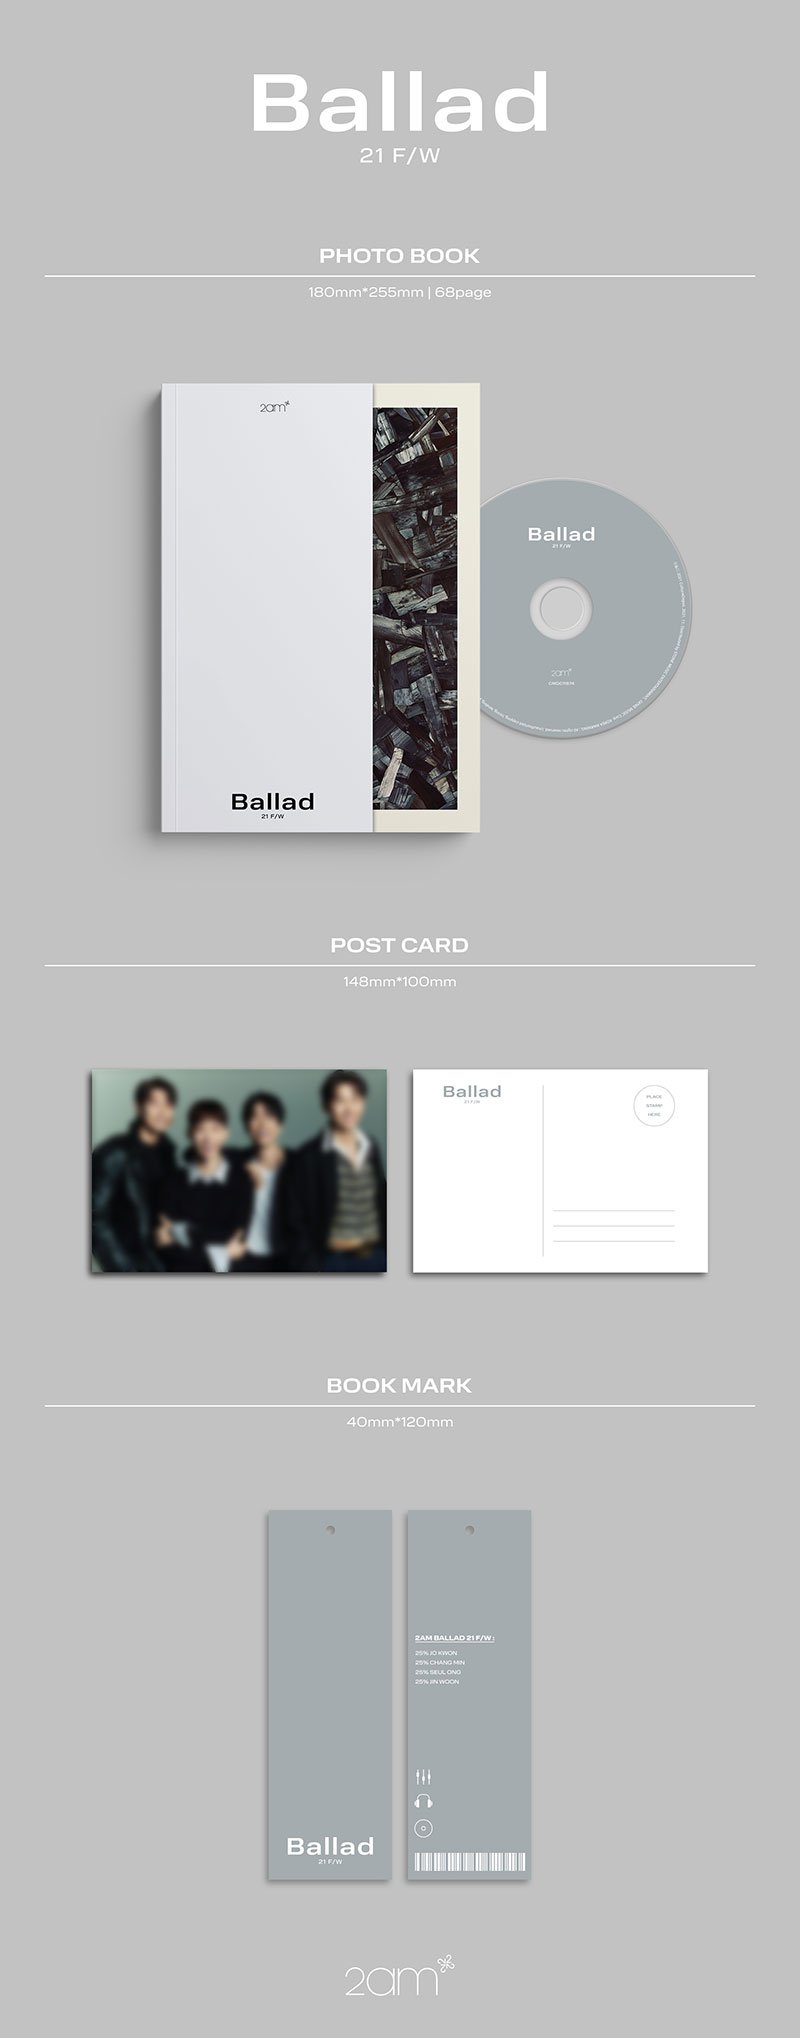 2AM Mini Album Vol. 4 - Ballad 21 F/W